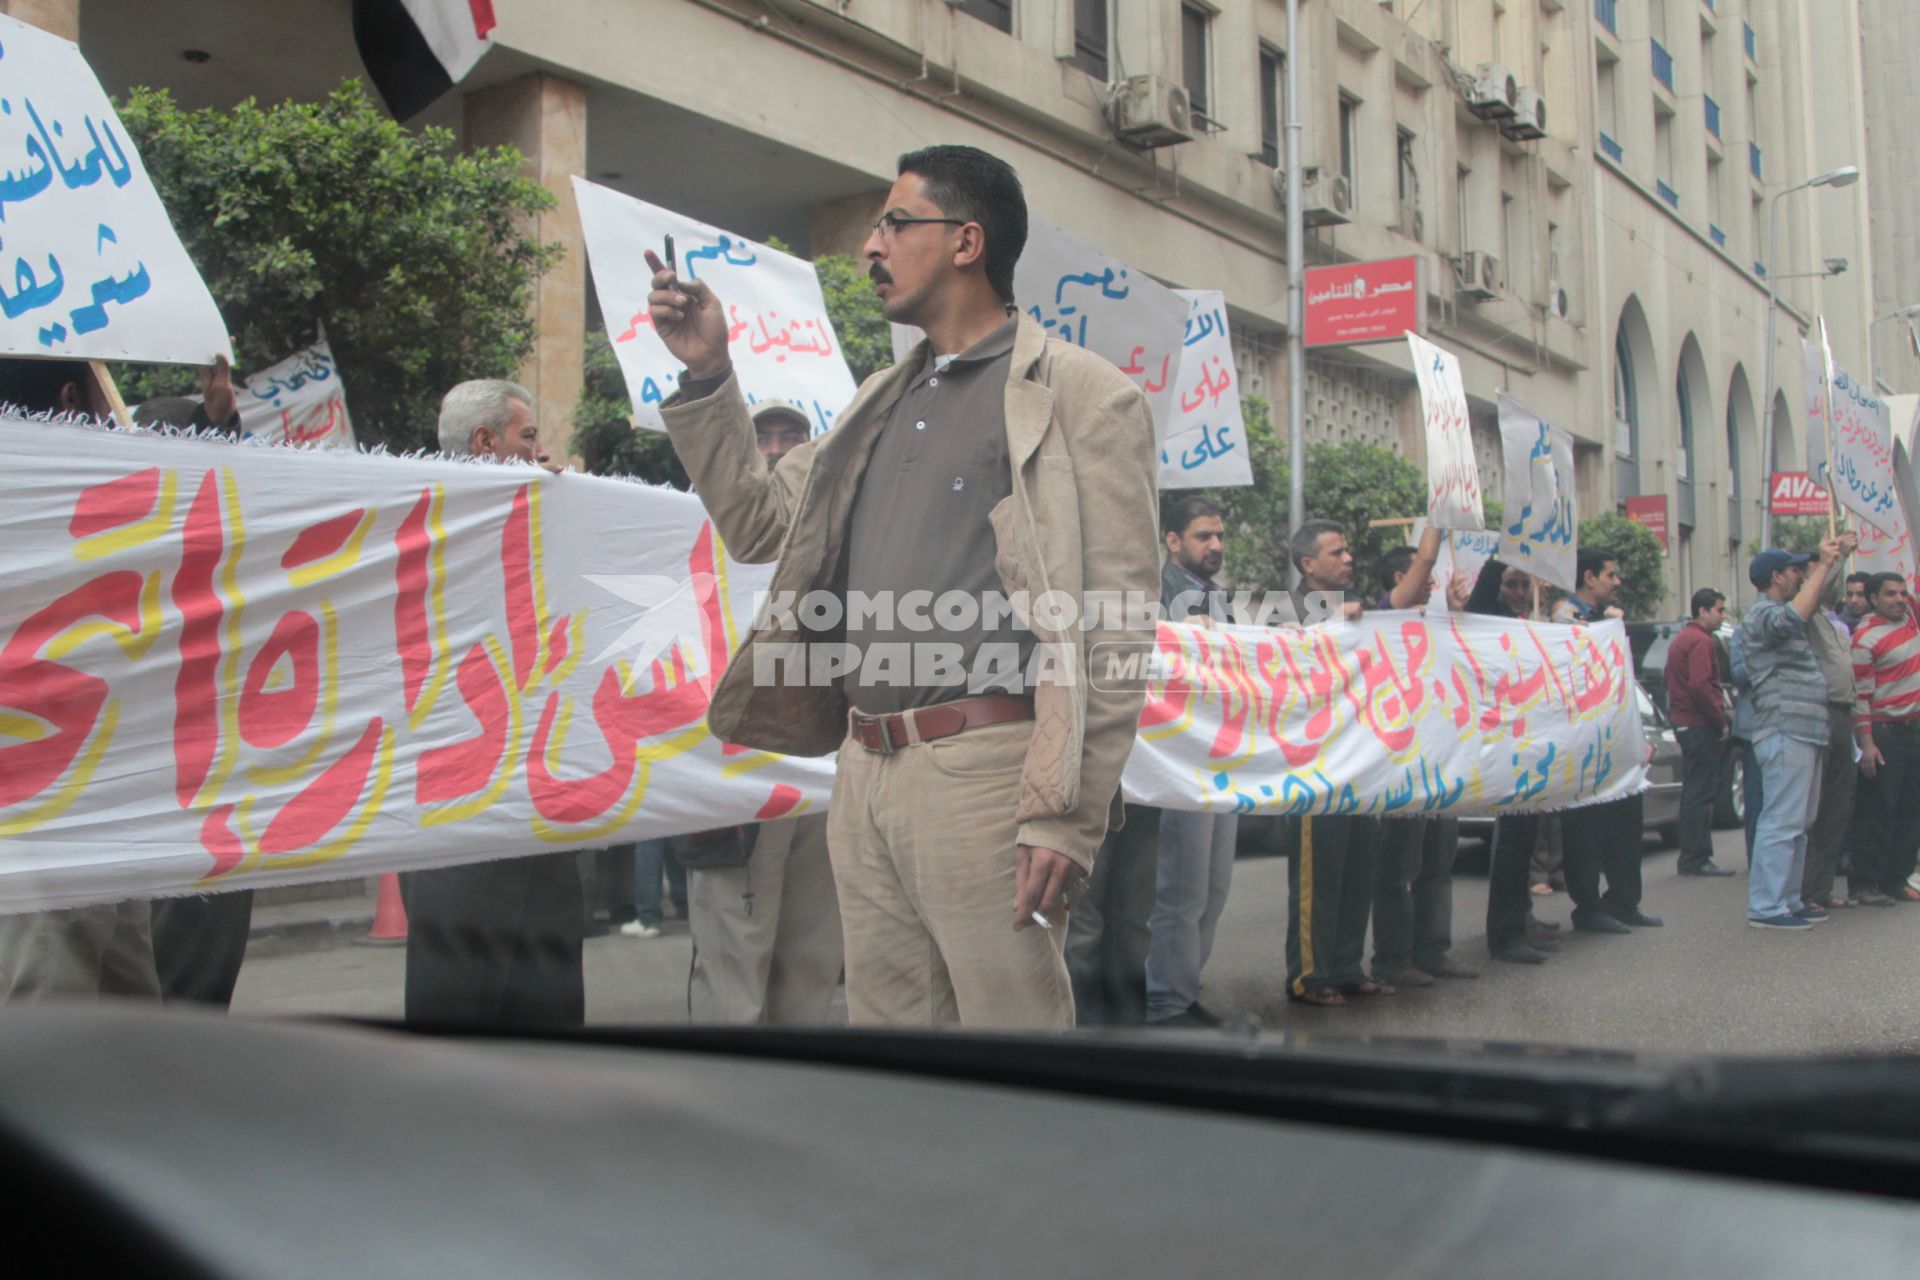 Каир. На снимке: демонстрация в поддержку нового правительства Египта в одном из переулков площади Тахрир.